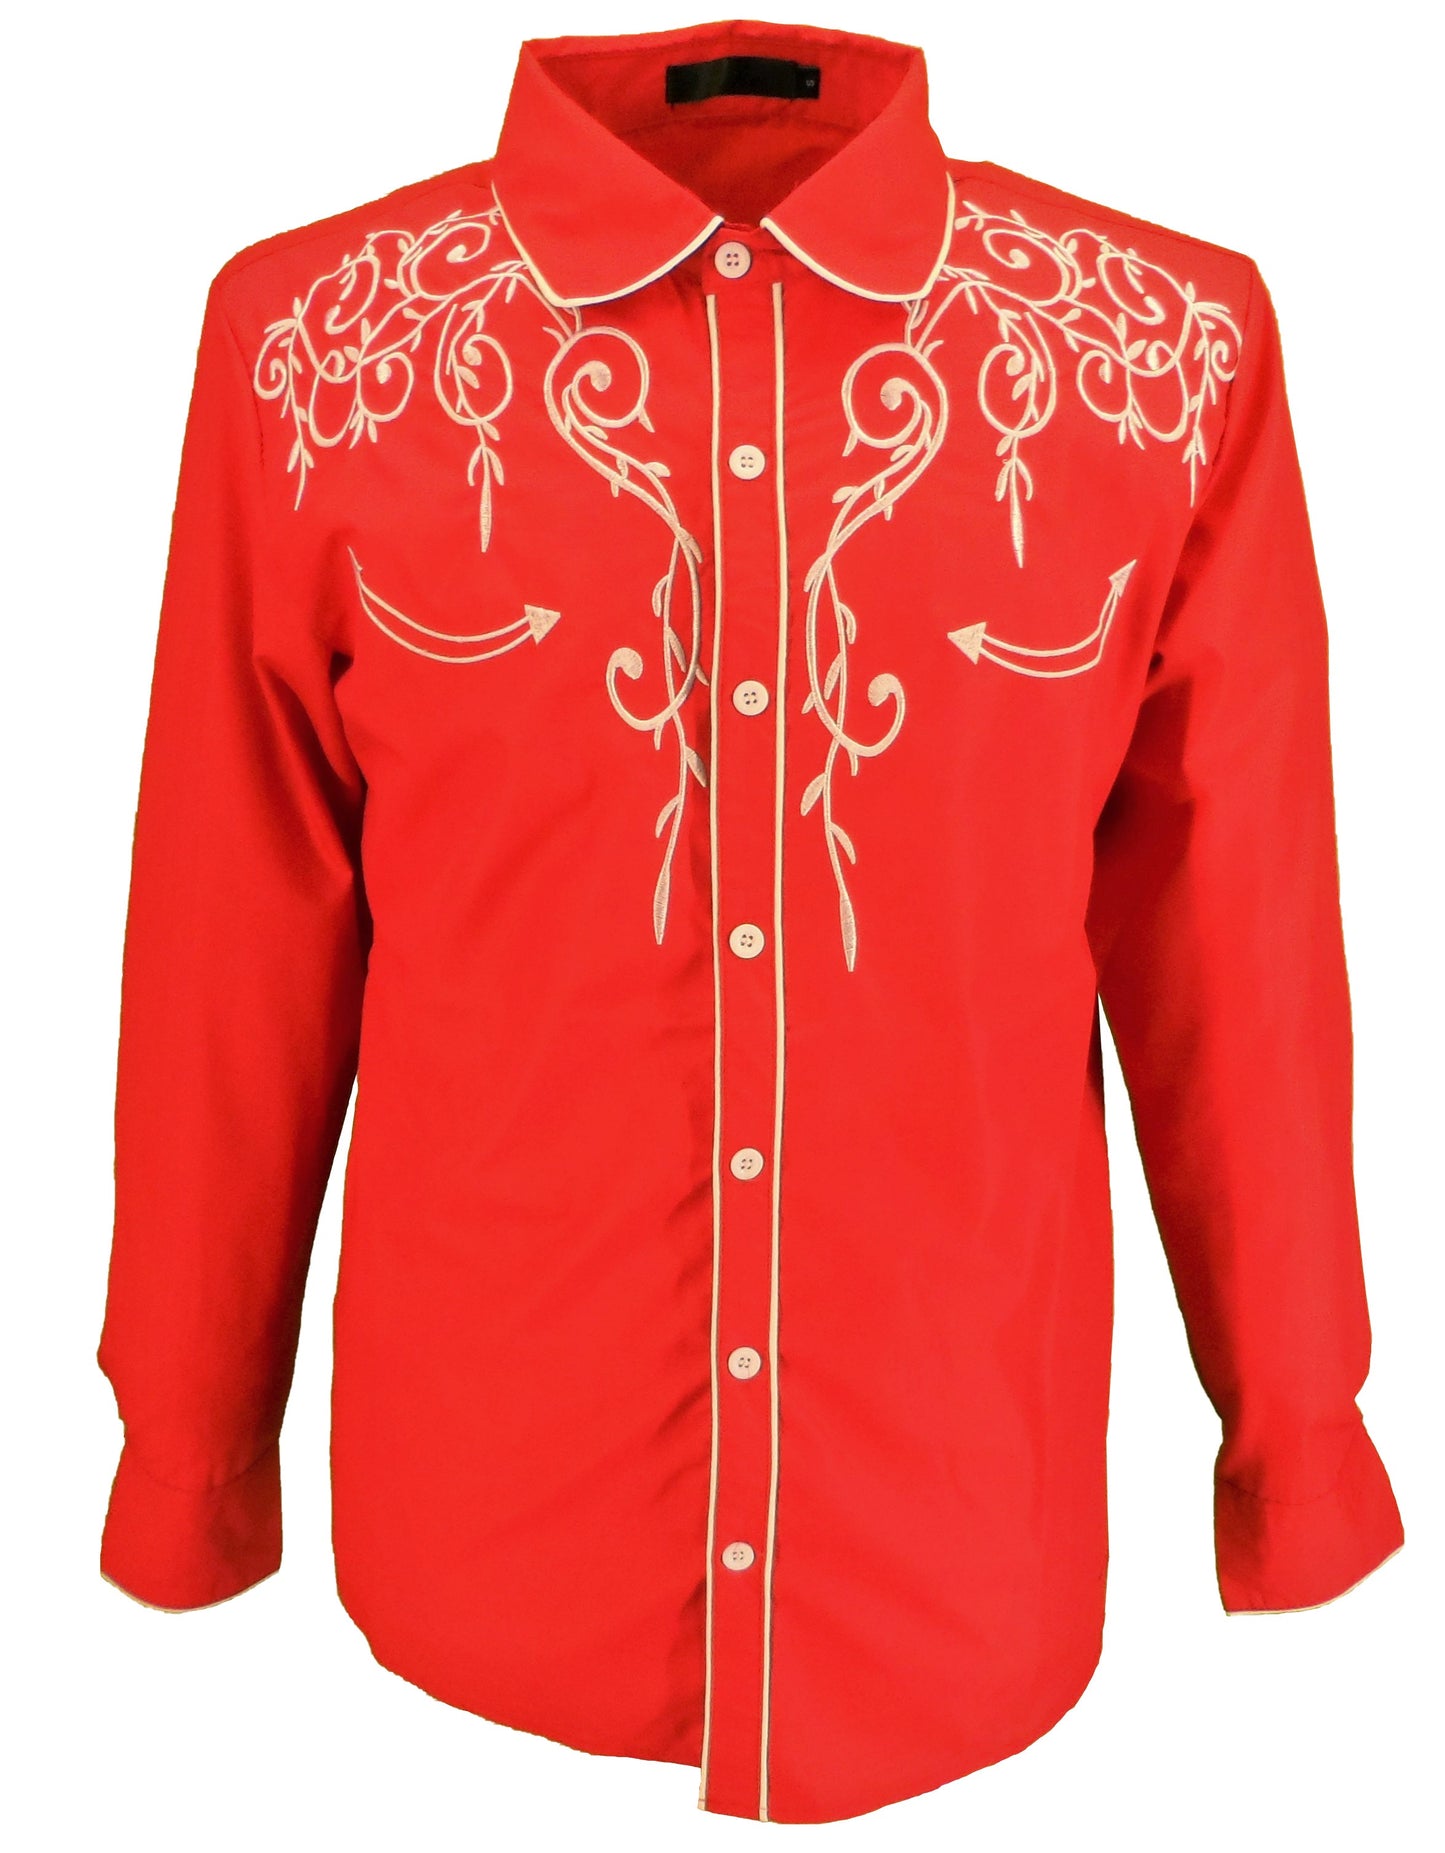 Mazeys Chemises Vintage/Rétro De Cowboy Western Rouge Pour Hommes